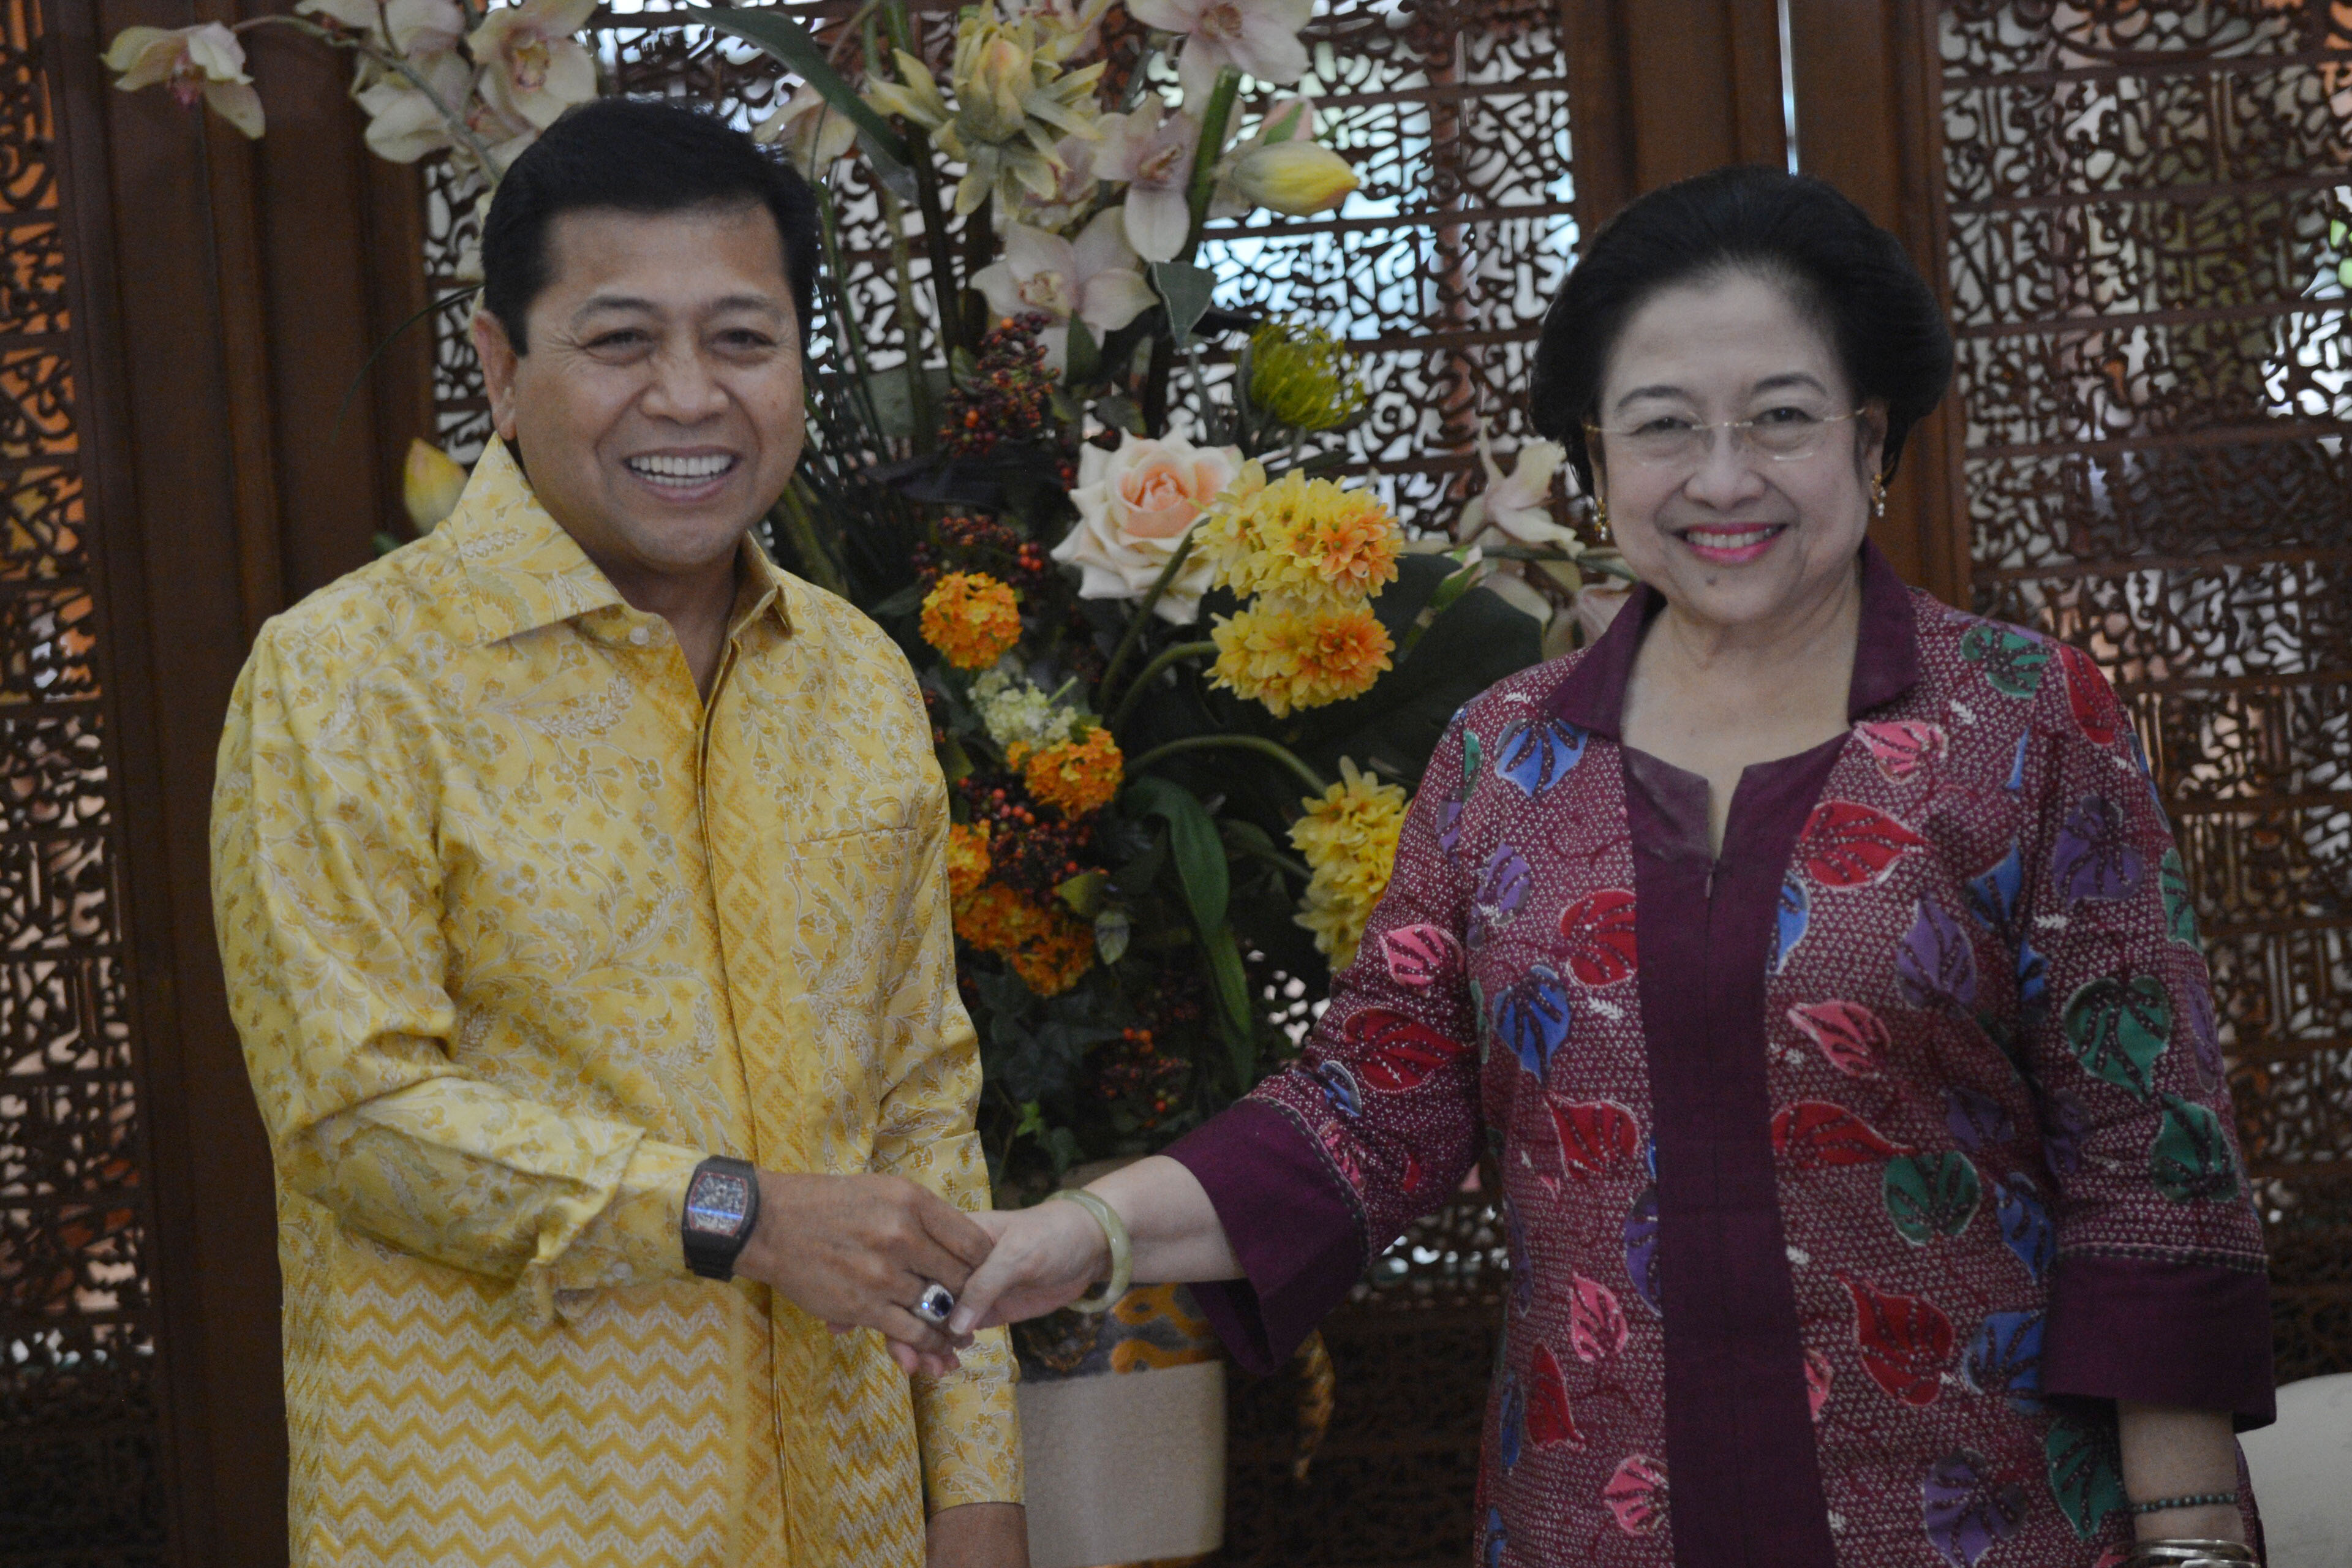 Ketua Umum PDIP Megawati Soekarnoputri (kanan) berjabat tangan dengan Ketua Umum Partai Golkar Setya Novanto (kiri) sebelum menggelar pertemuan di Jakarta, pada 20 November 2016. Foto oleh Akbar Nugroho Gumay/Antara 